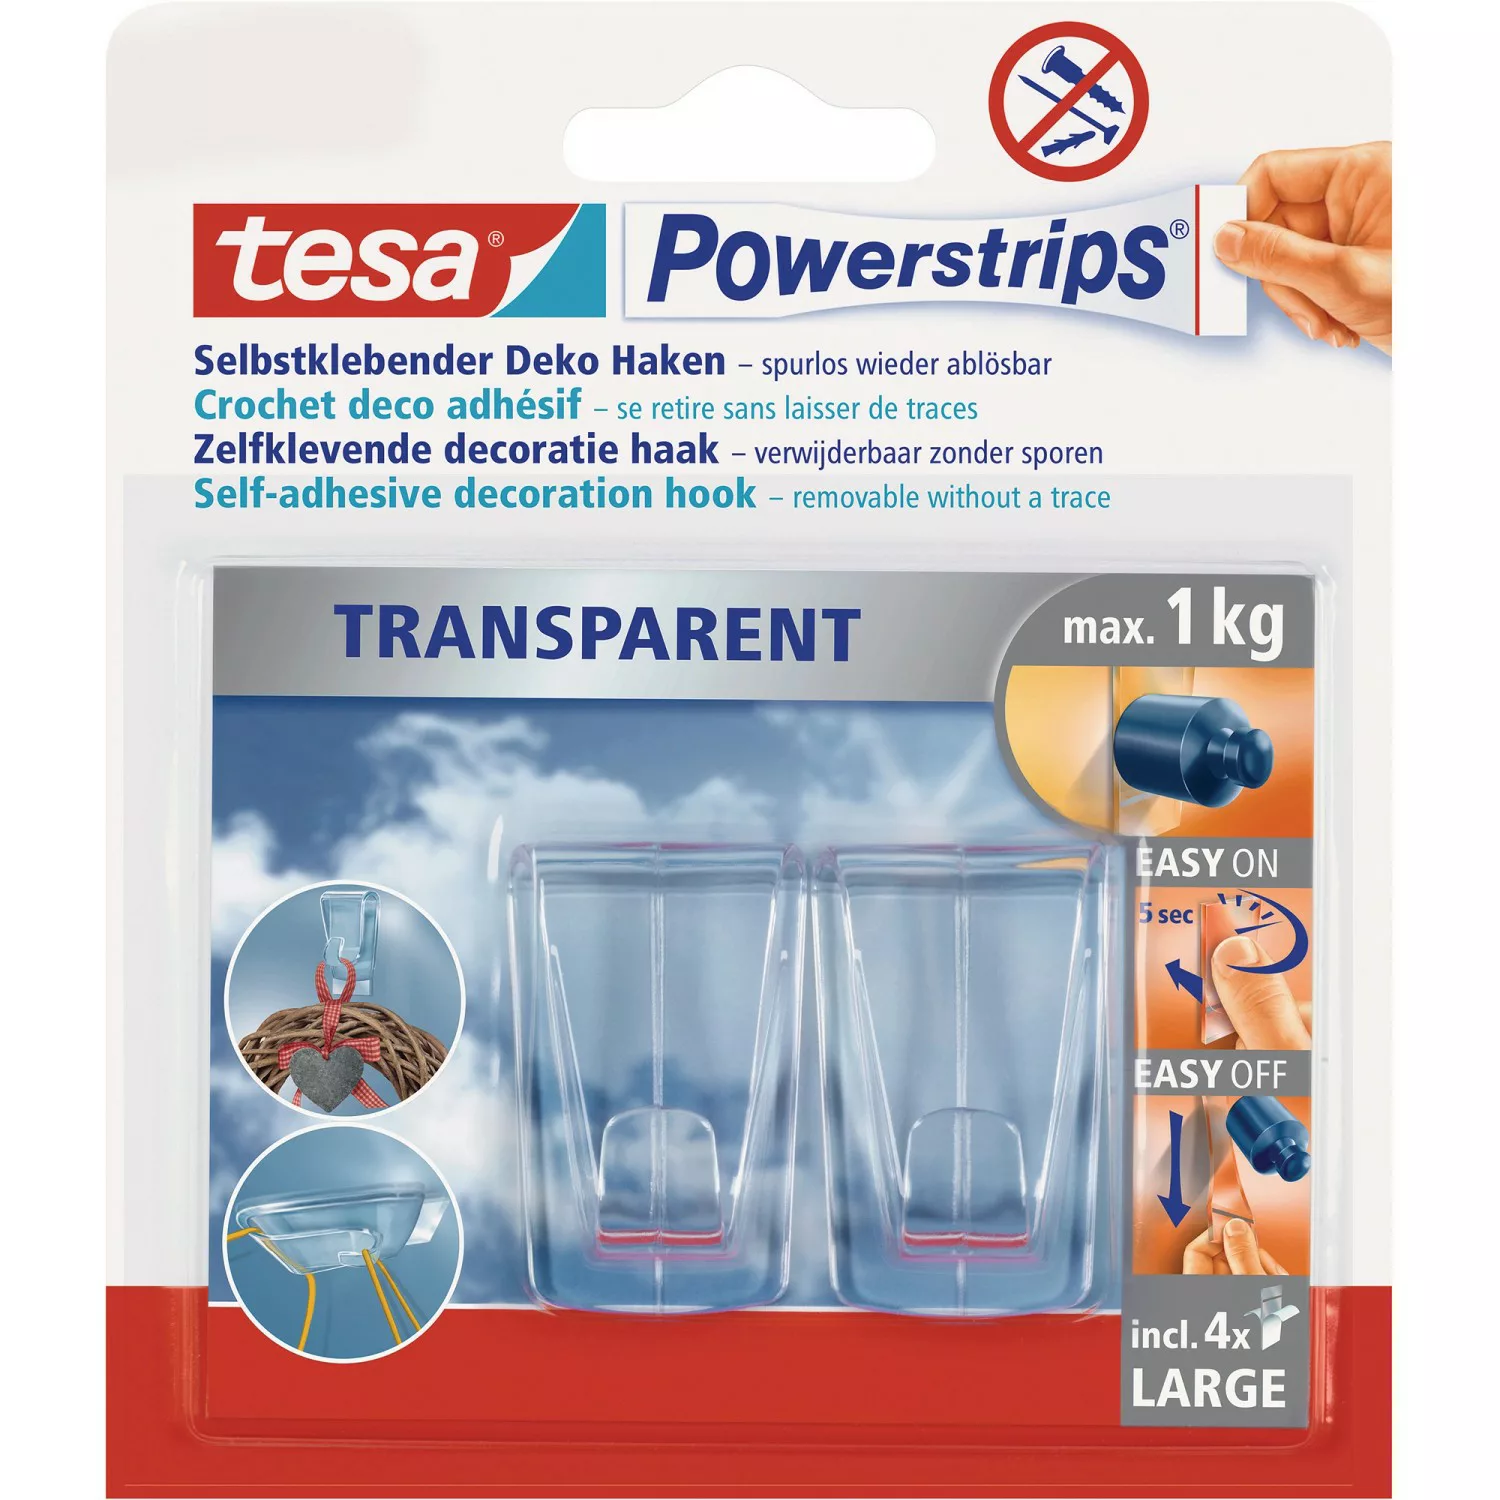 Tesa Powerstrips 2 Deko Haken Transparent mit 4 x Powerstrips Large günstig online kaufen